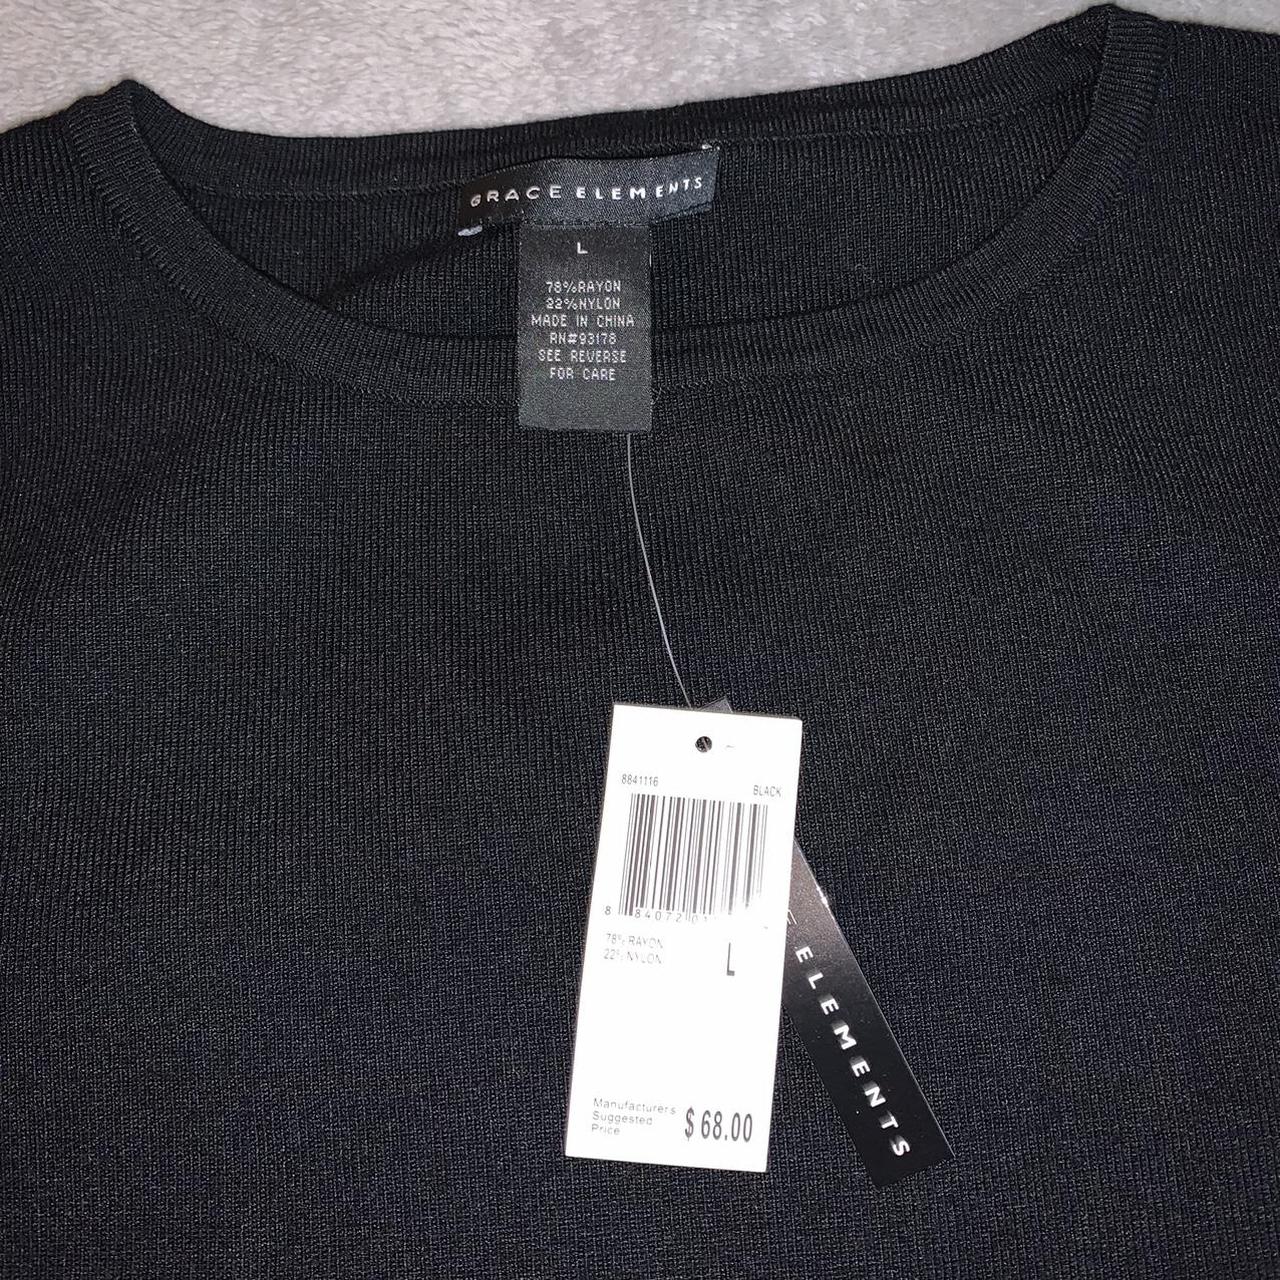 Product Image 4 - Basic Black Sweater size large